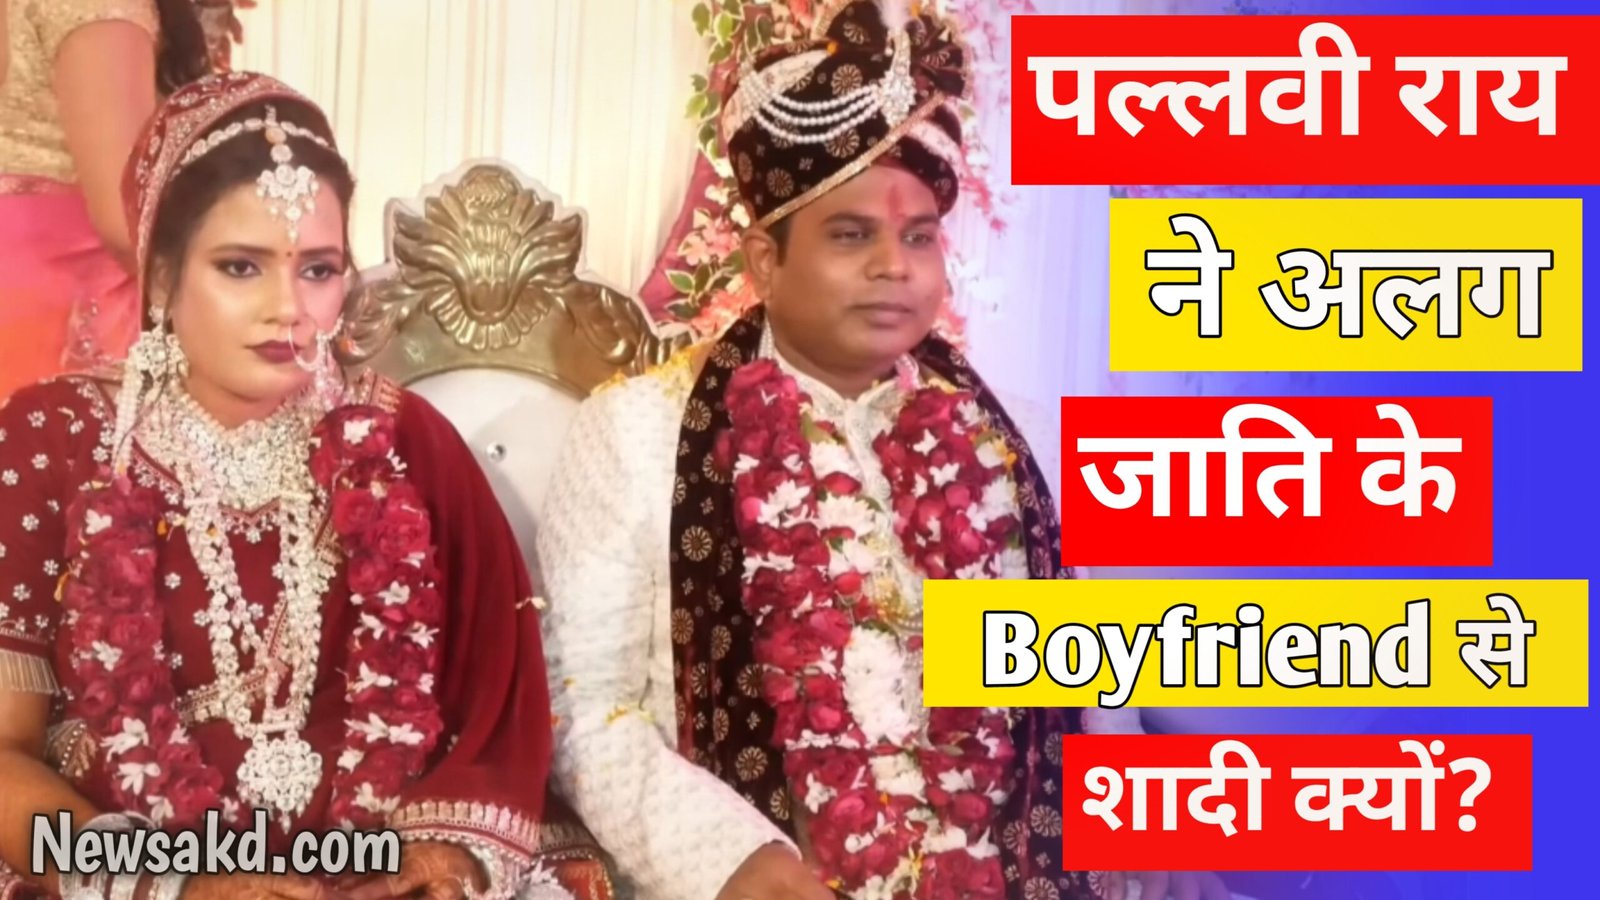 भारत एक नई सोच के पत्रकार पल्लवी राय ने अपने से अलग जाति के बॉयफ्रेंड से रचाई शादी